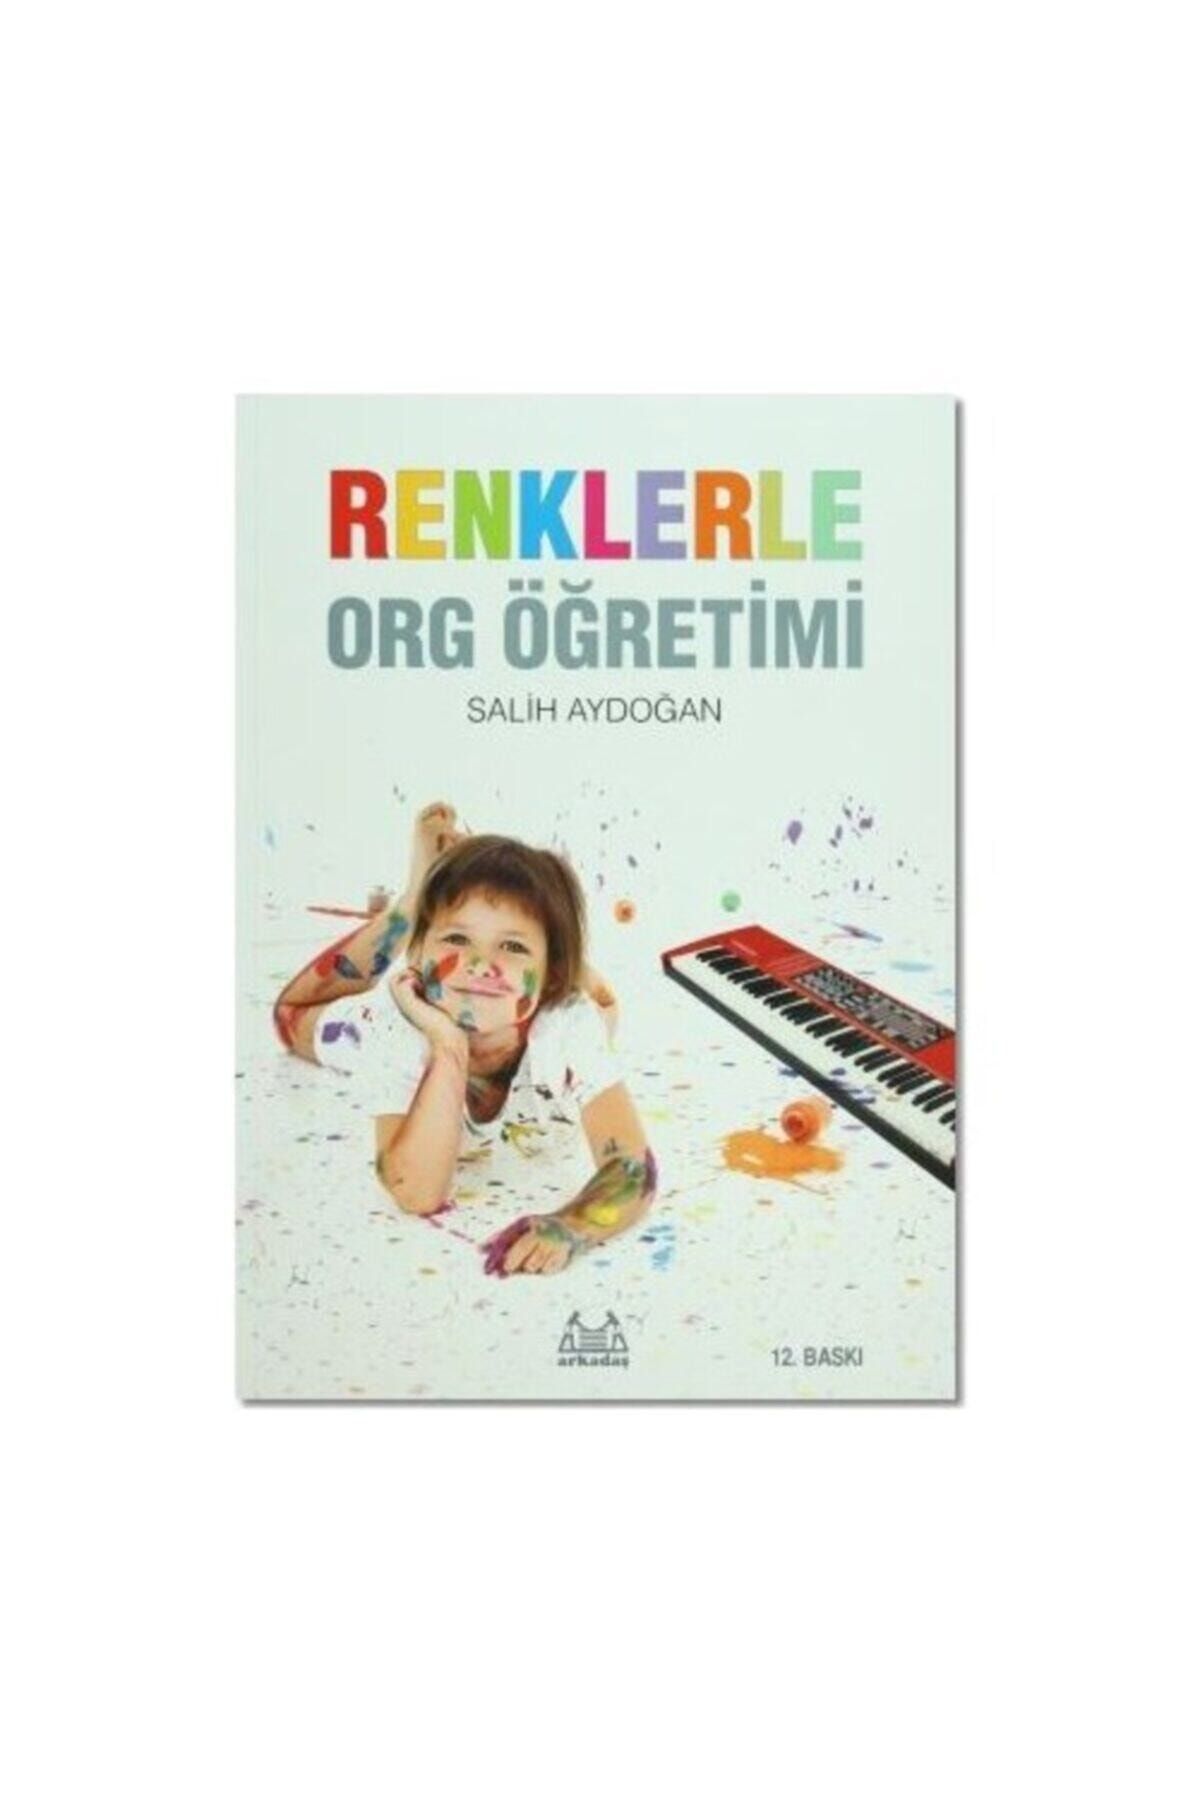 Arkadaş Yayıncılık Renklerle Org Öğretimi (salih Aydoğan - Müzik Kitapları) - Yeni Baskı